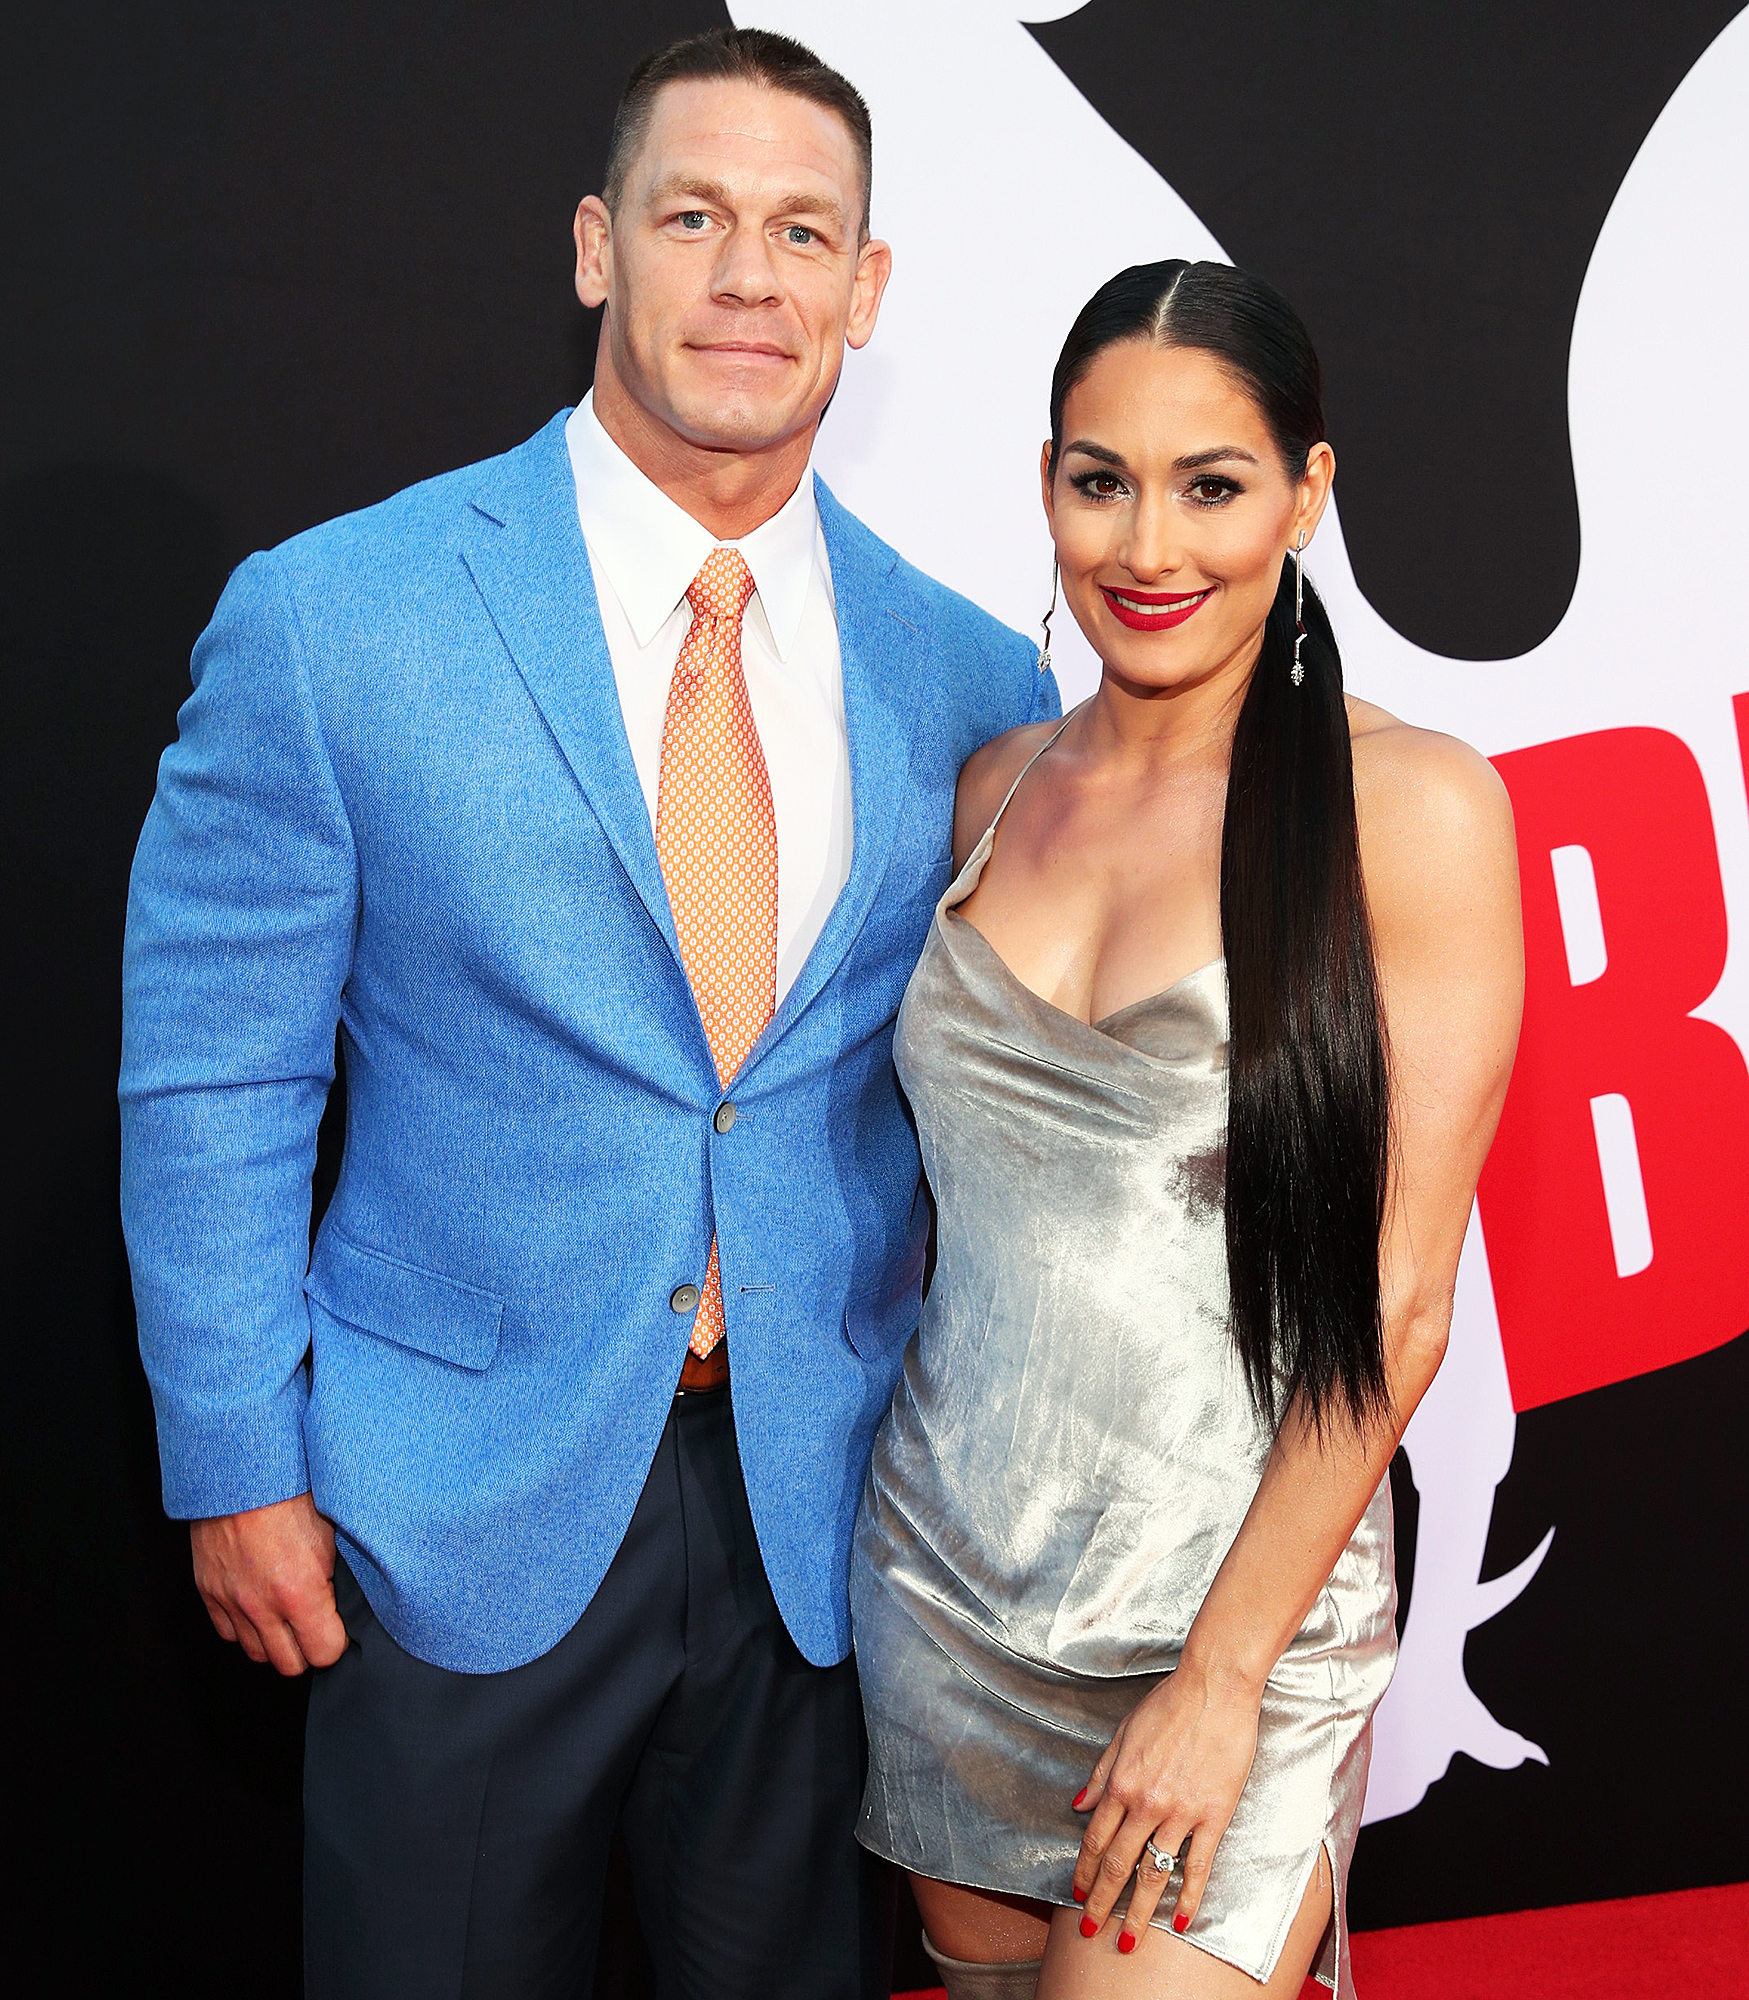 John Cena and Nikki Bella ‘Could Get Back Together’